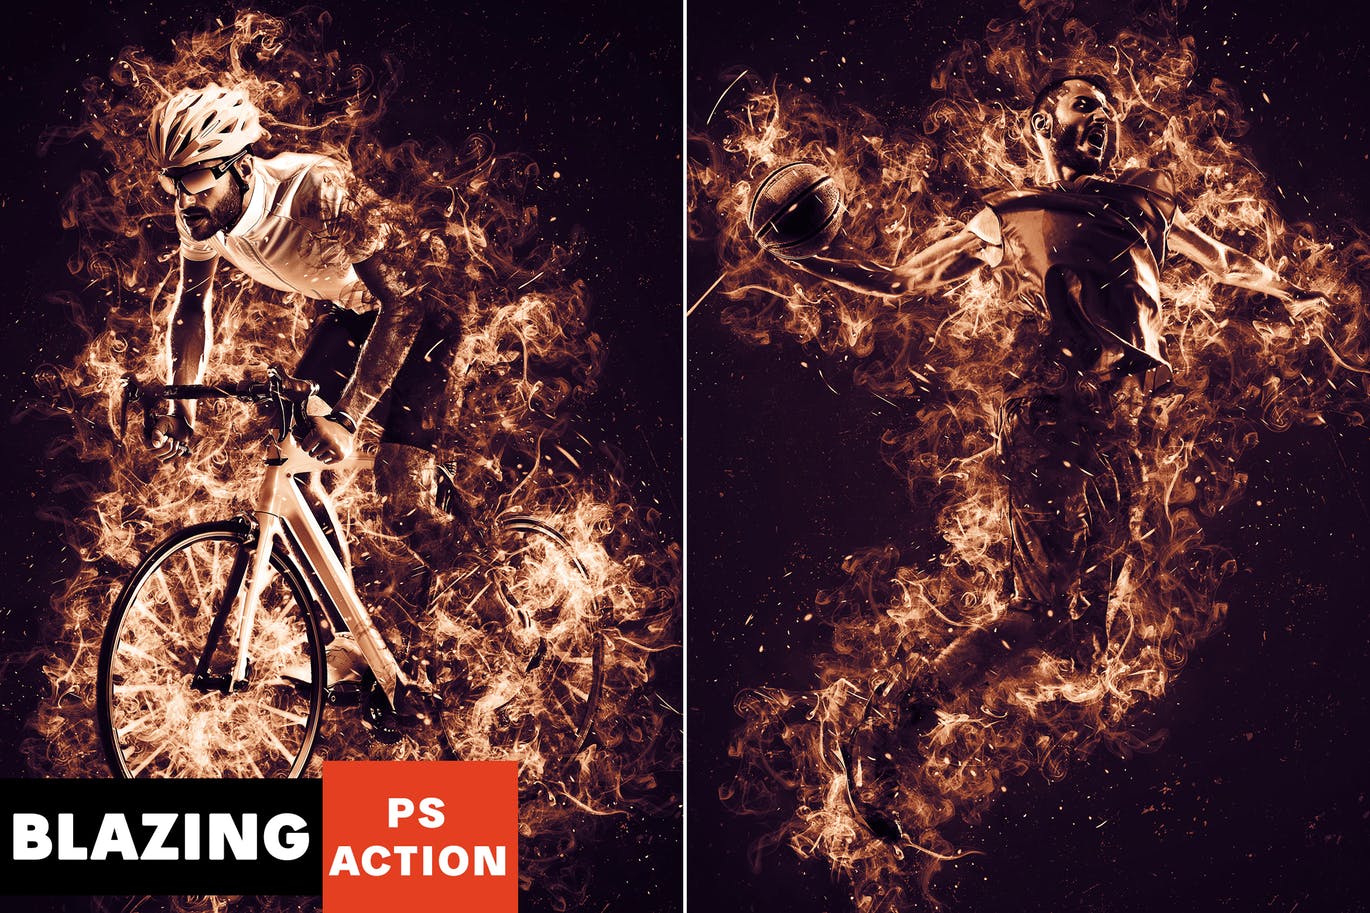 炽烈火焰/余烬和充满活力色彩创意特效16设计素材网精选PS动作 Blazing Photoshop Action插图